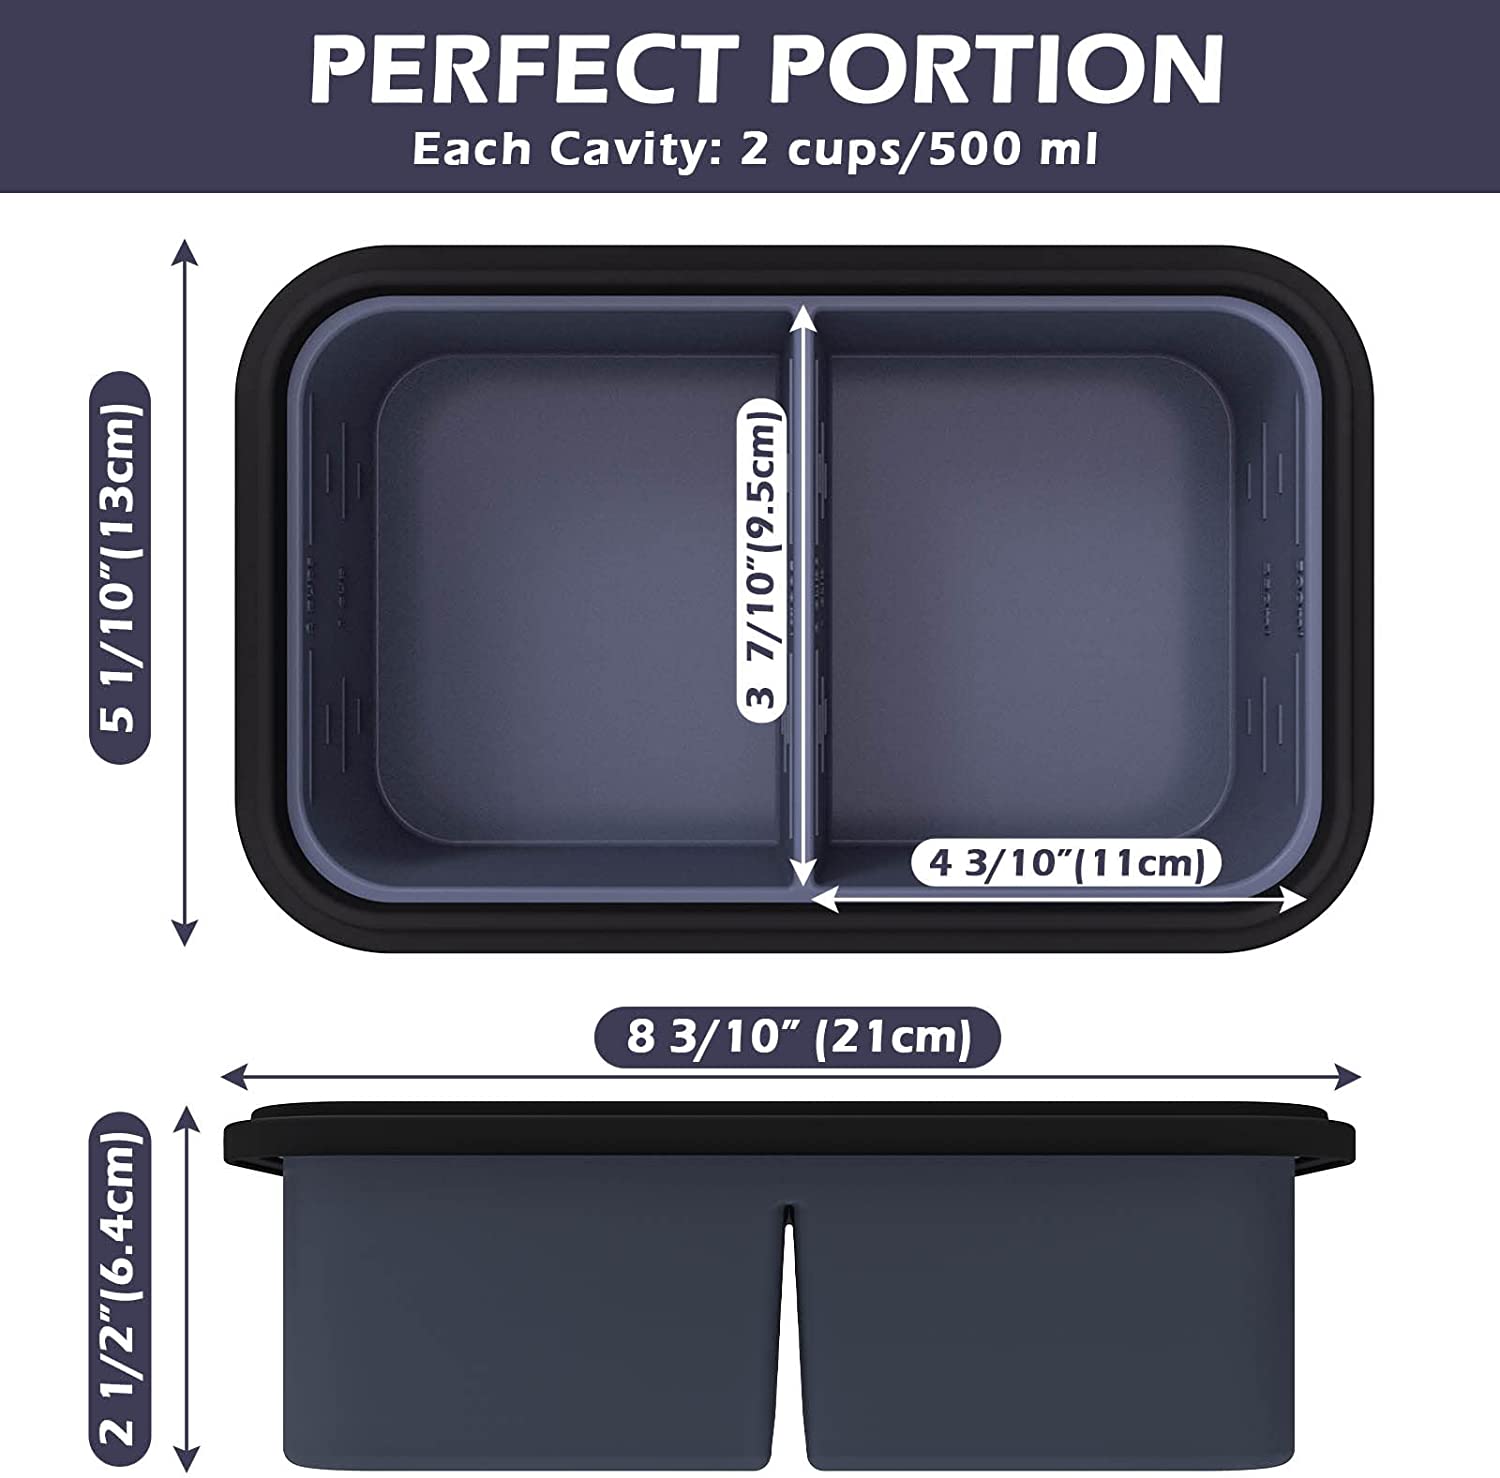 Perfect Portion Freezer Trays